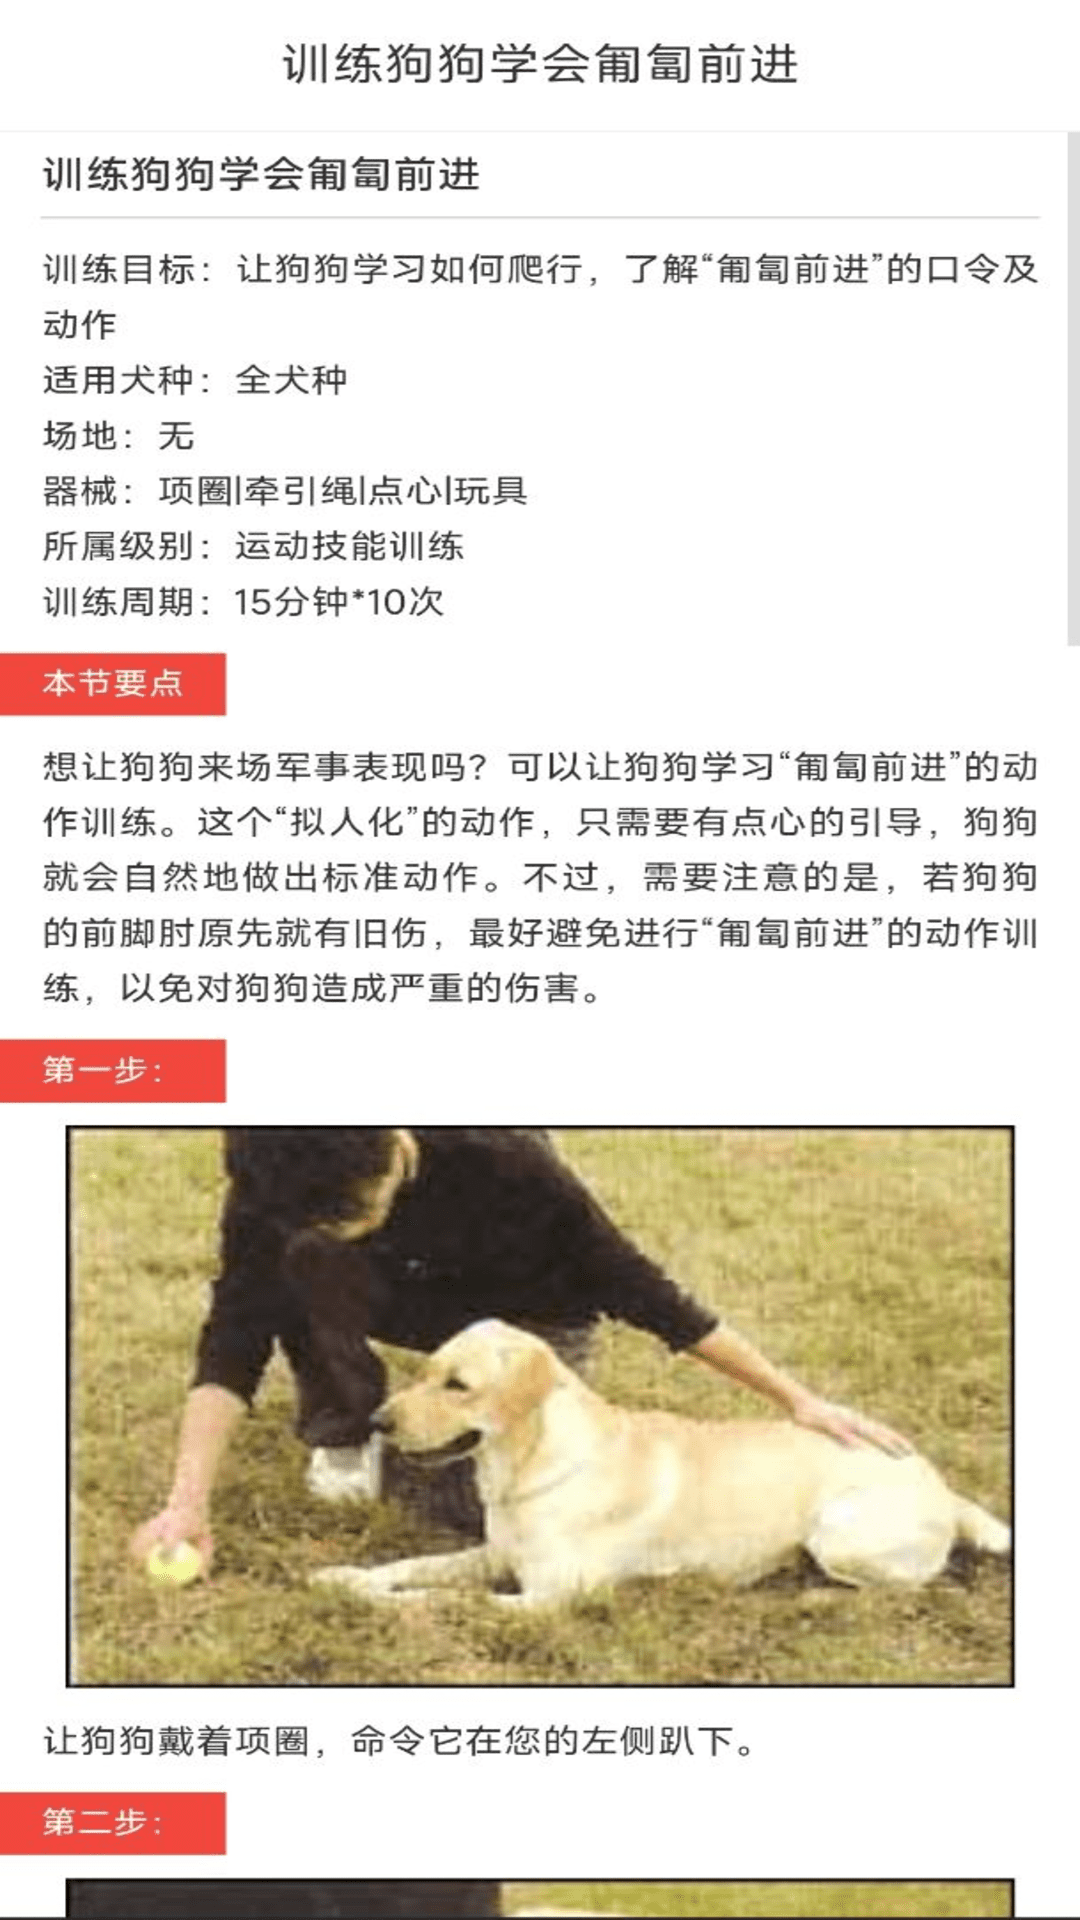 动物对话翻译器中文版(2)